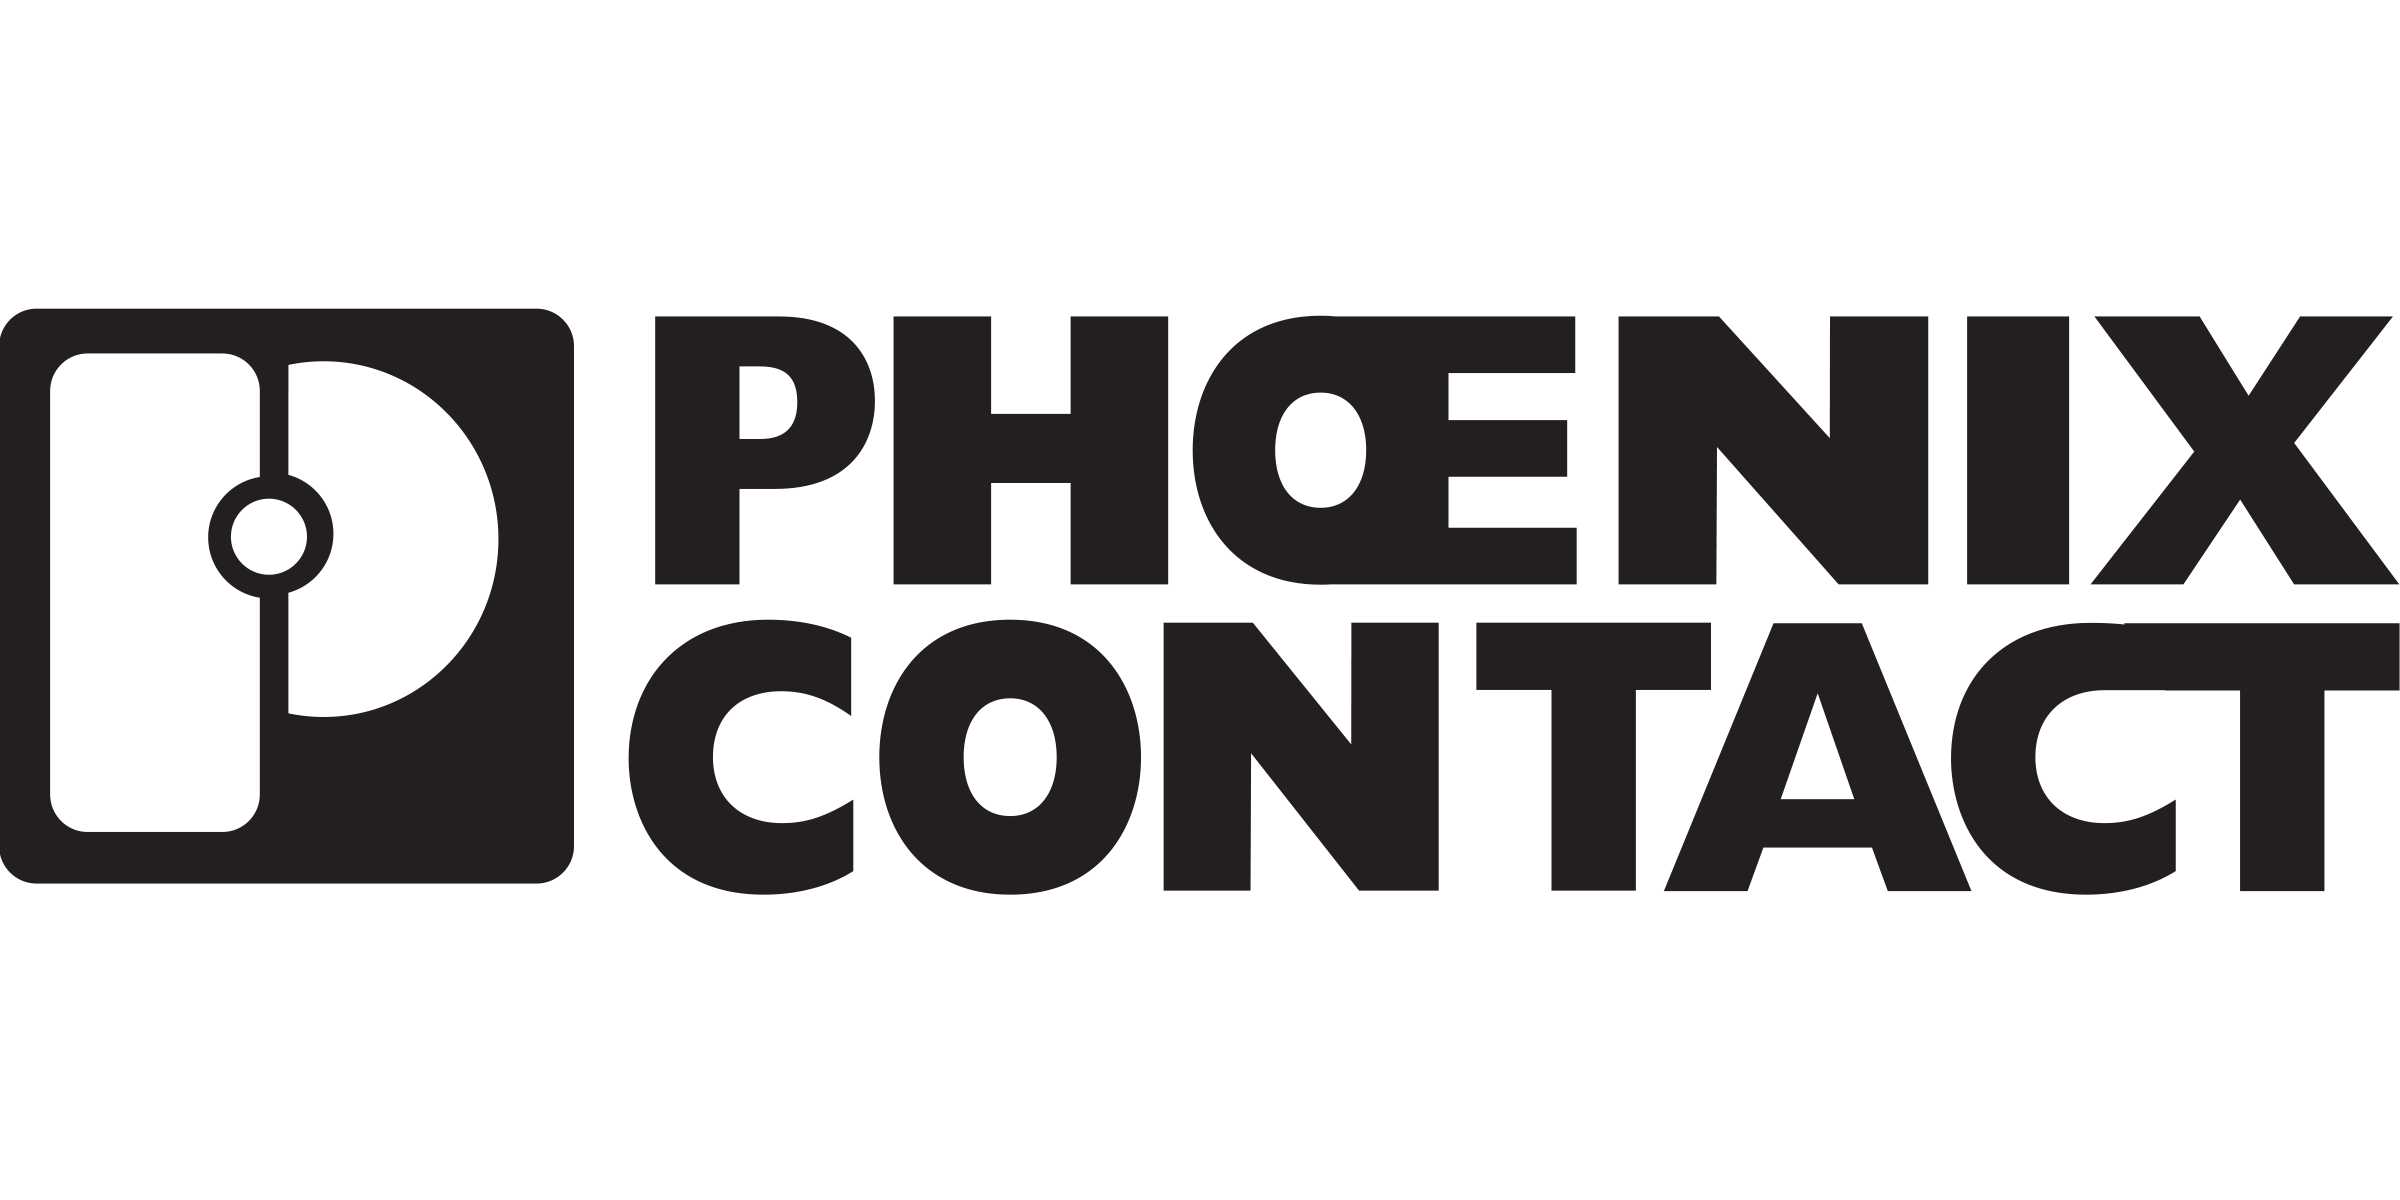 Логотип PHOENIX CONTACT (Феникс Контакт)